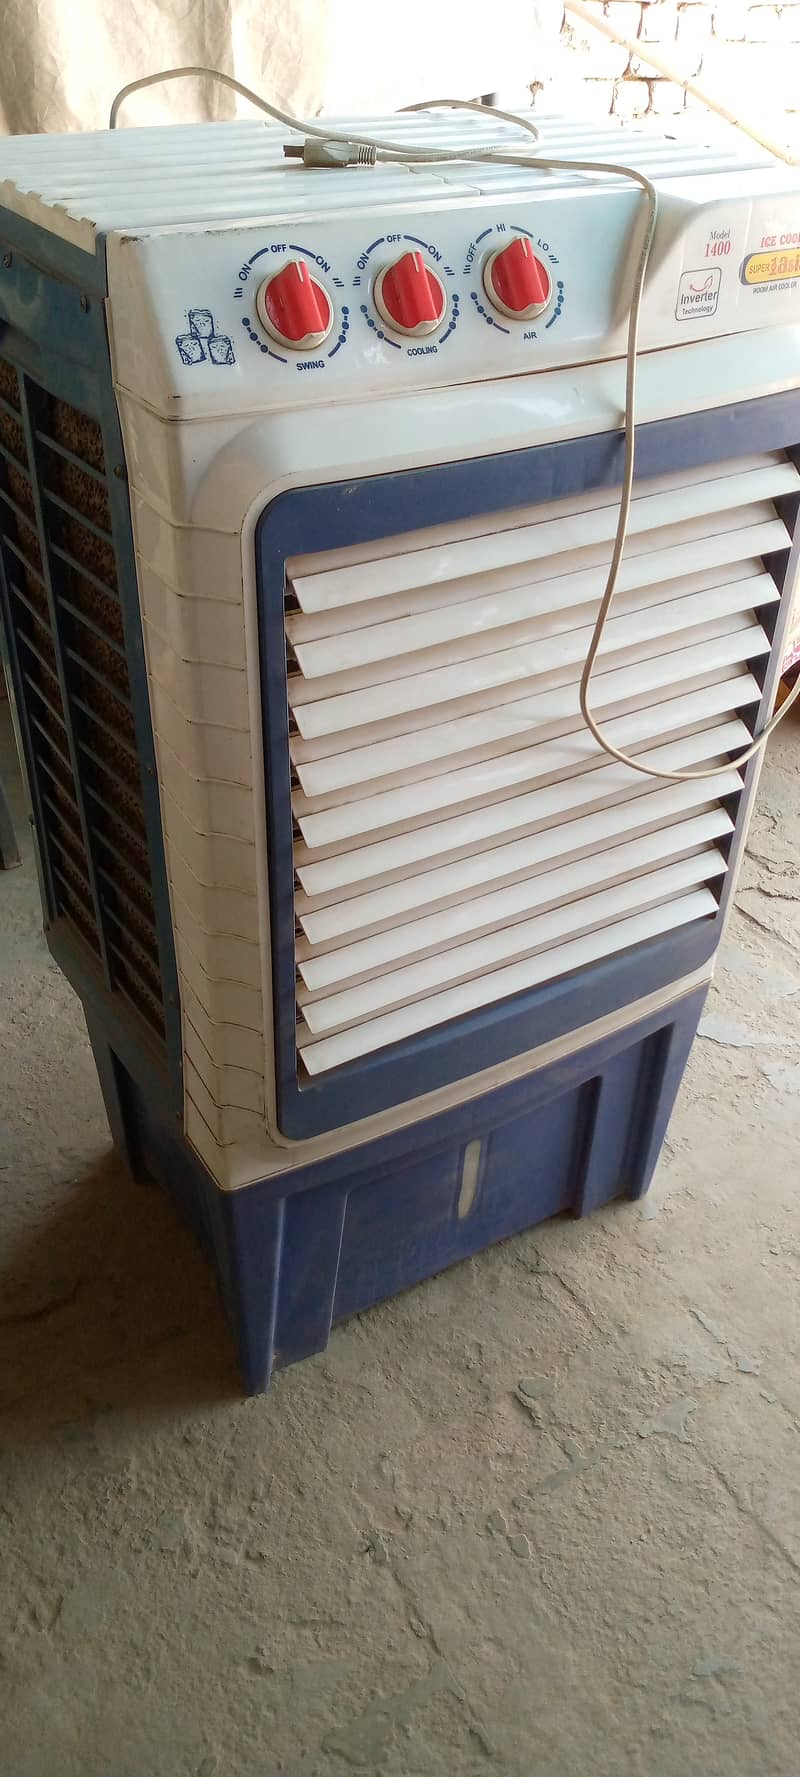 Air cooler model 1400 2